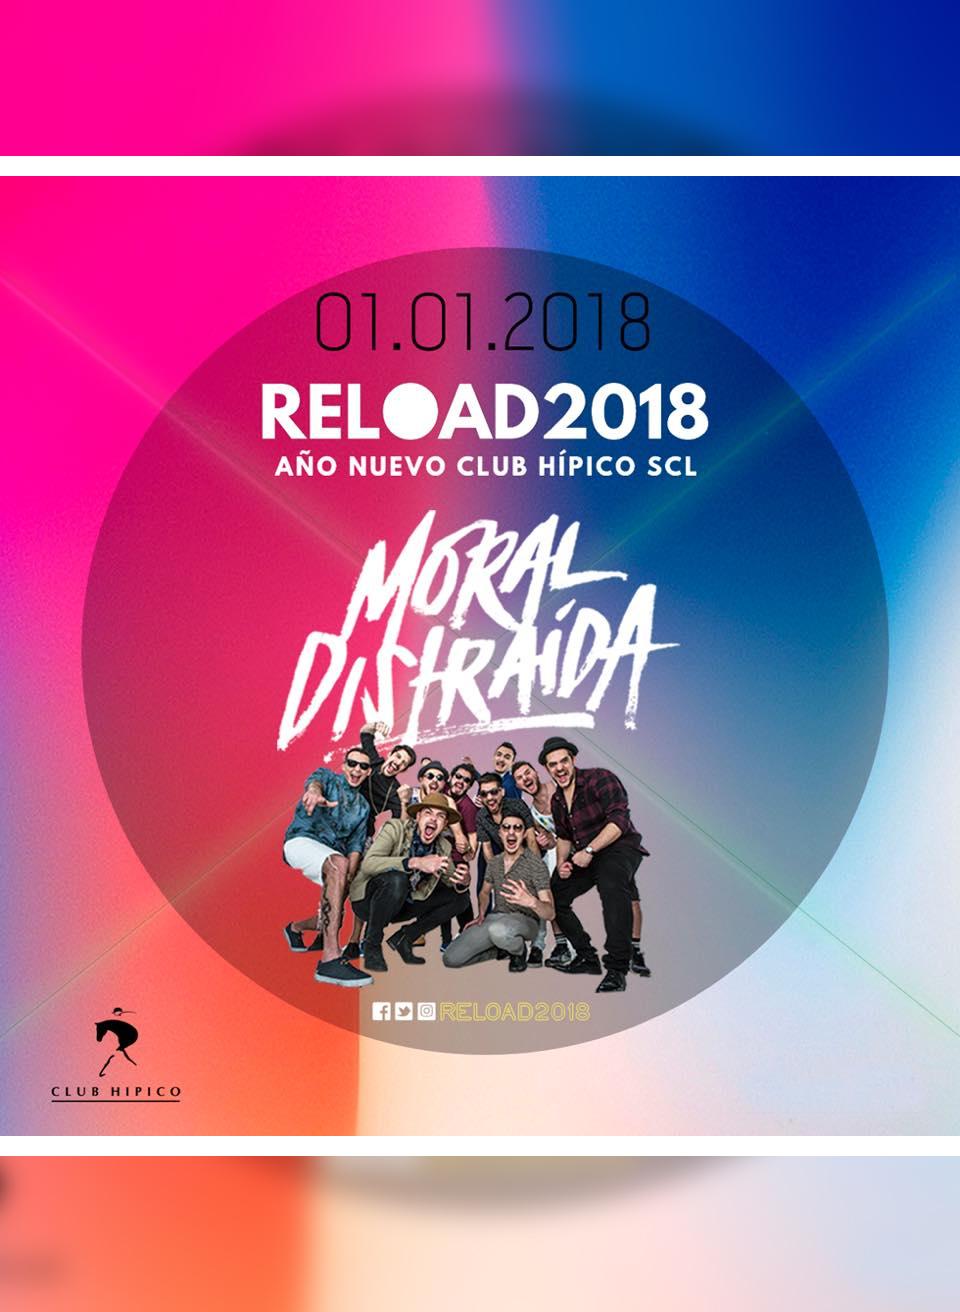 Año Nuevo Club Hípico Reload 2018 - Moral Distraída y más